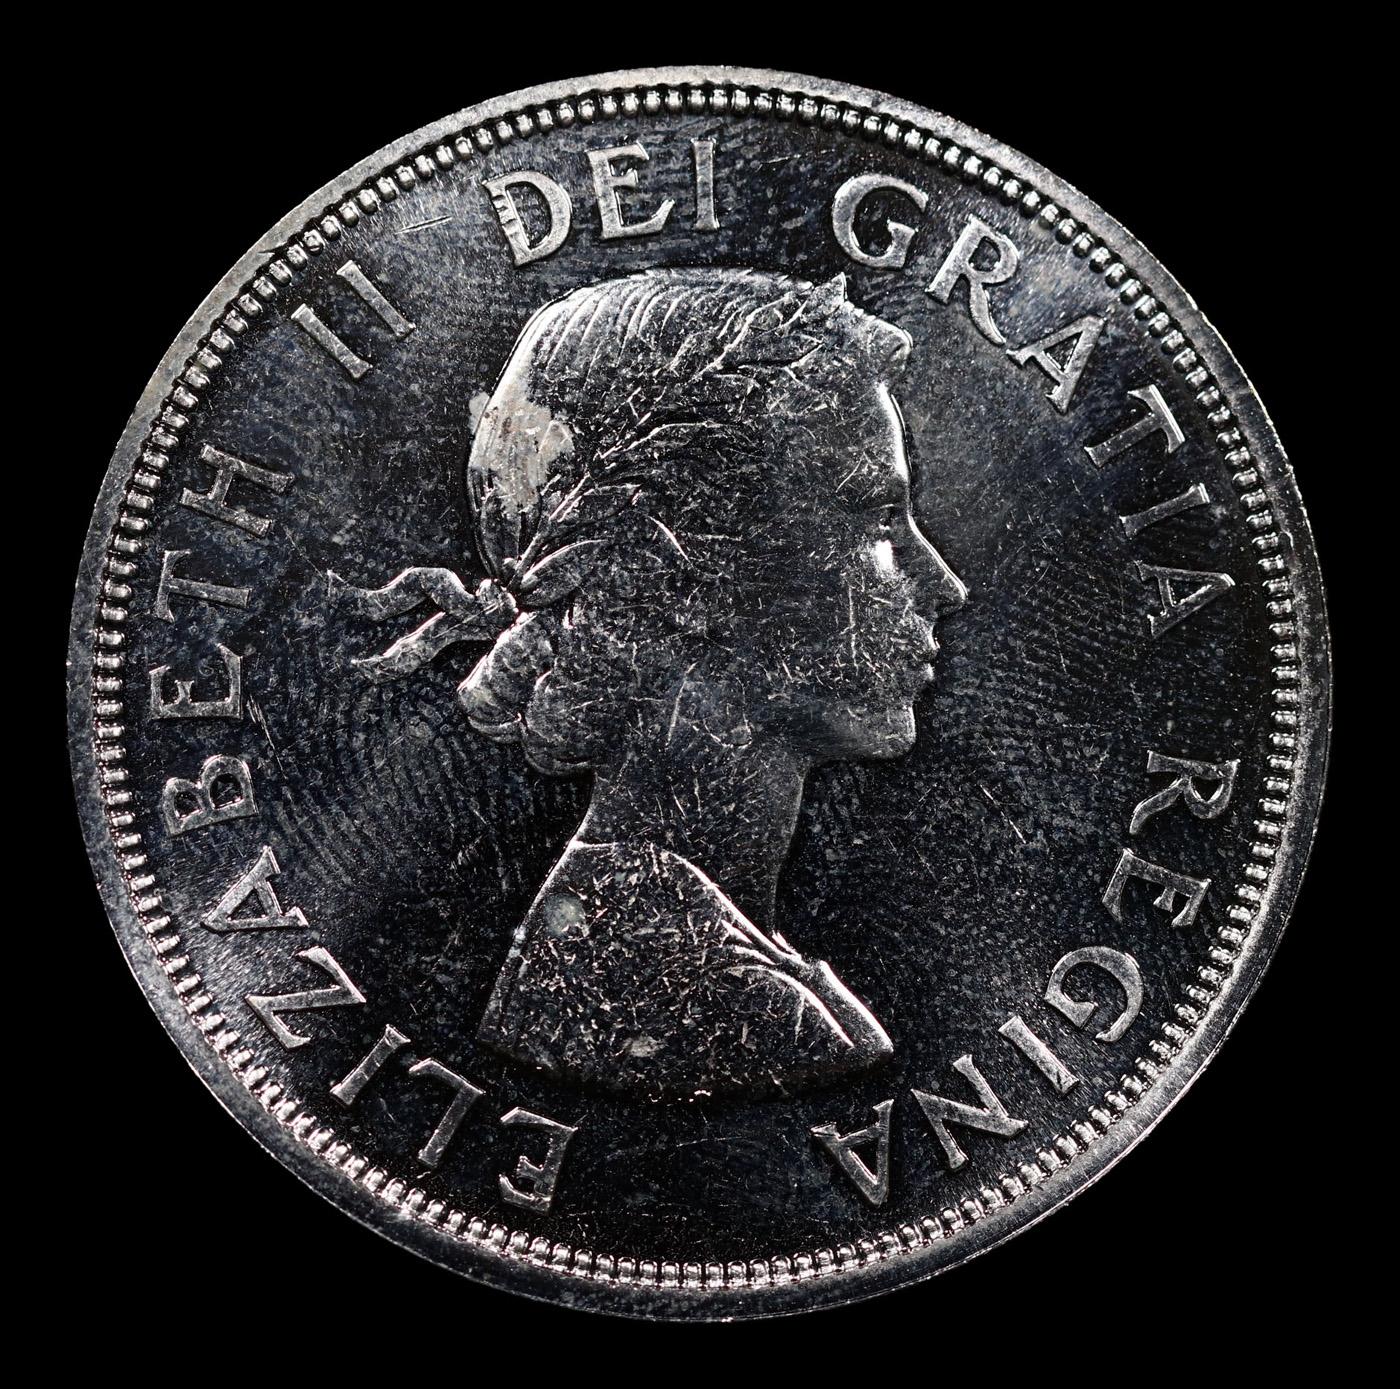 1964 Canada Dollar $1 Grades GEM+ PL